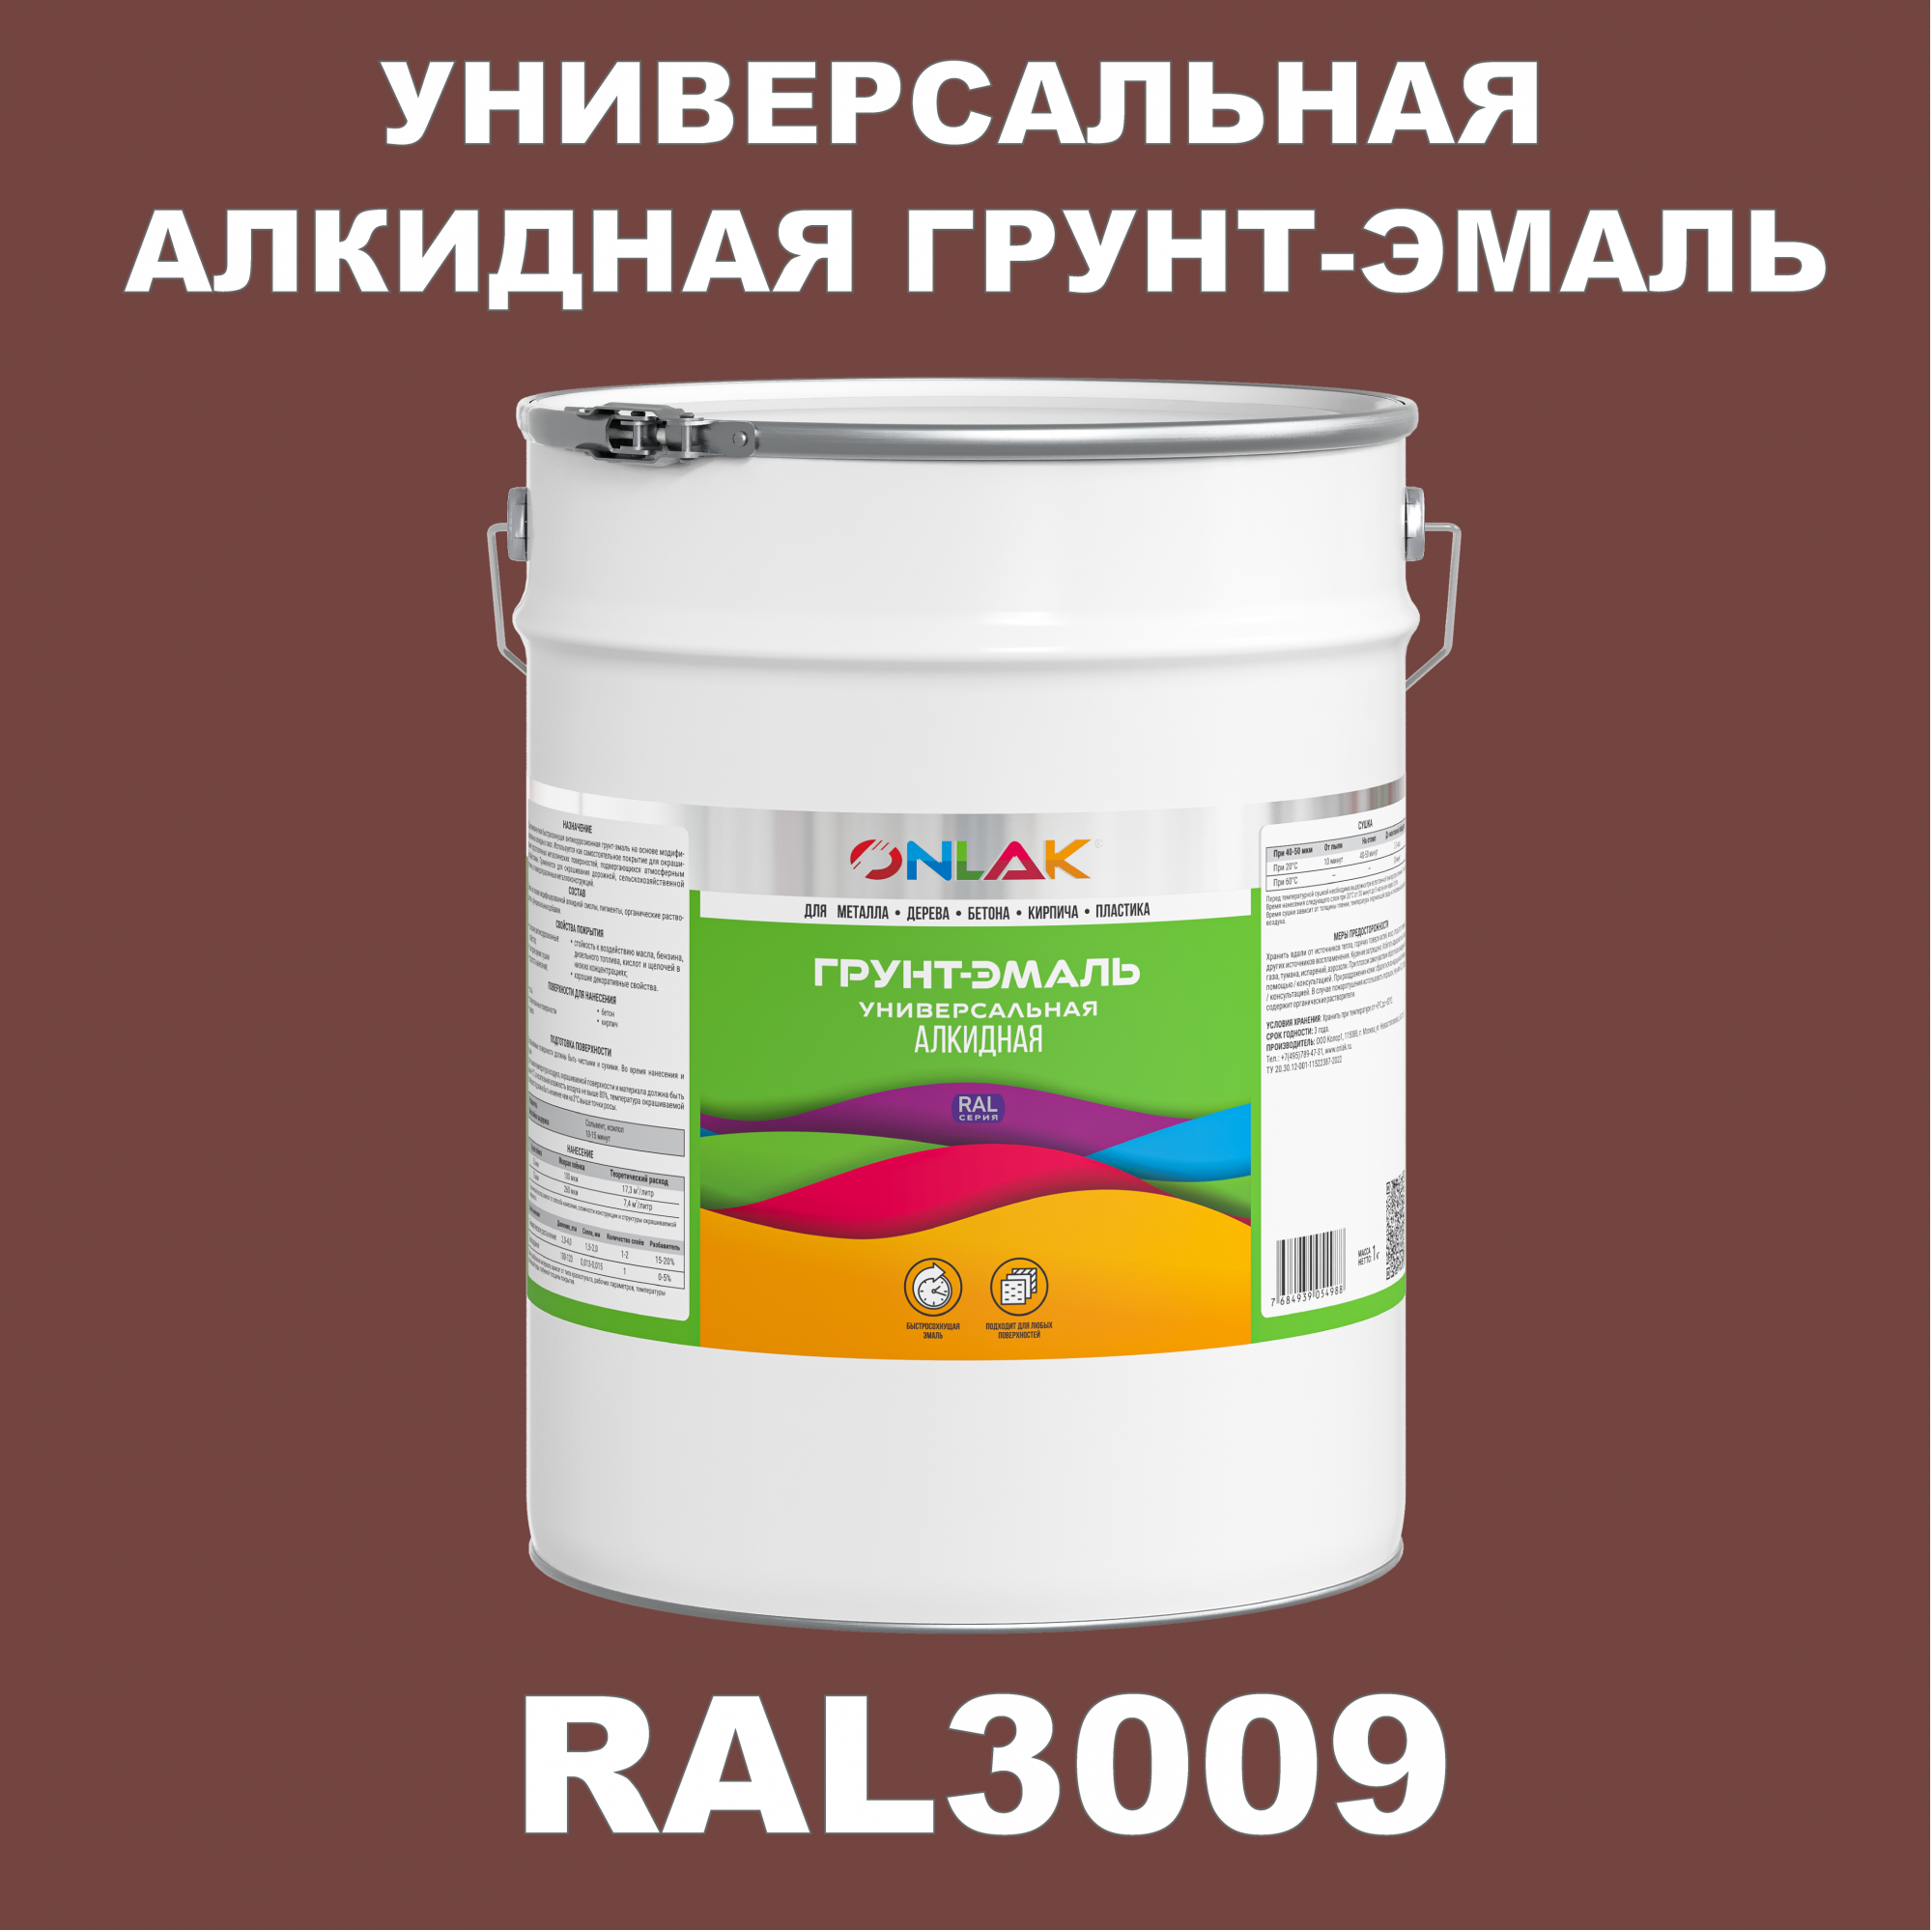 Грунт-эмаль ONLAK 1К RAL3009 антикоррозионная алкидная по металлу по ржавчине 20 кг грунт аэрозольный антикоррозийный inral ground красный ral3009 400мл